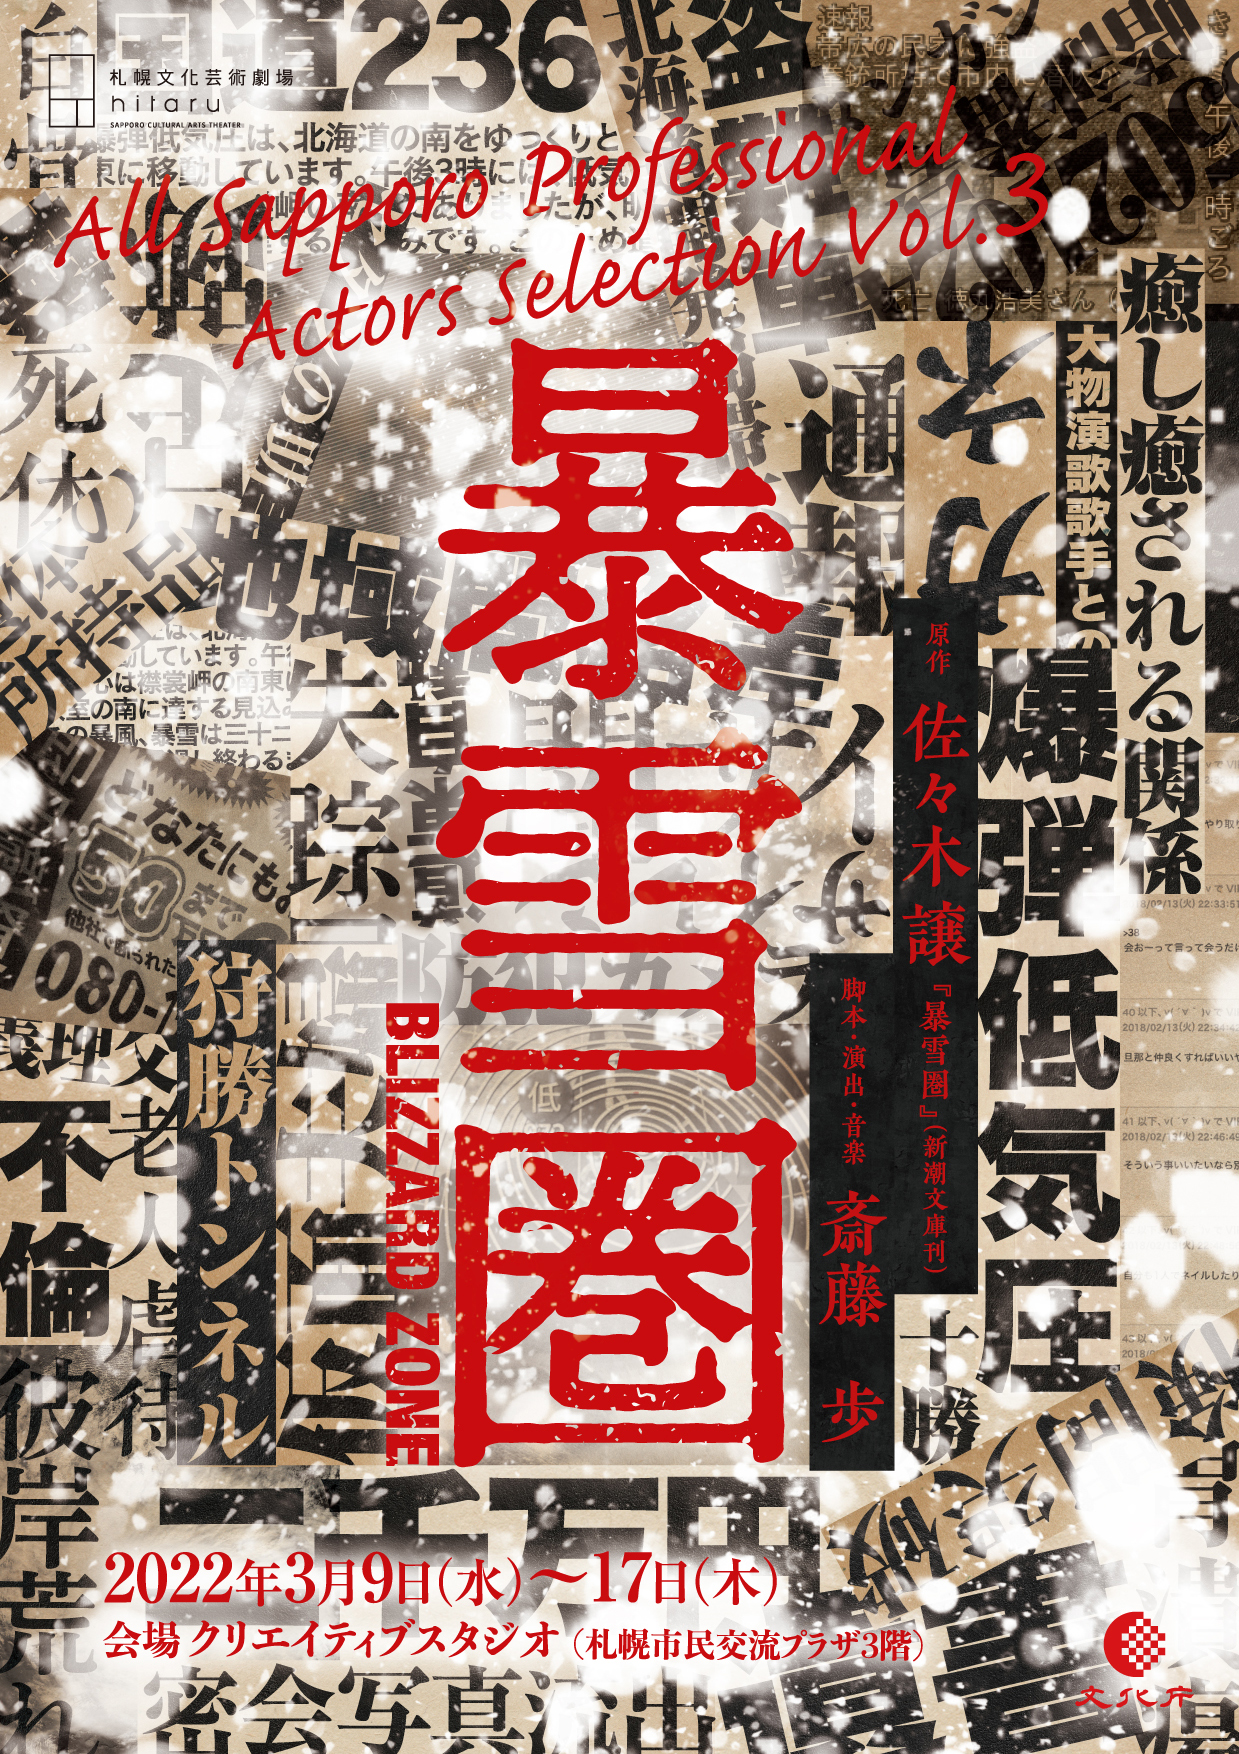 All Sapporo Professional Actors Selection Vol.3 Bosetsuken (Blizzard Zone) image